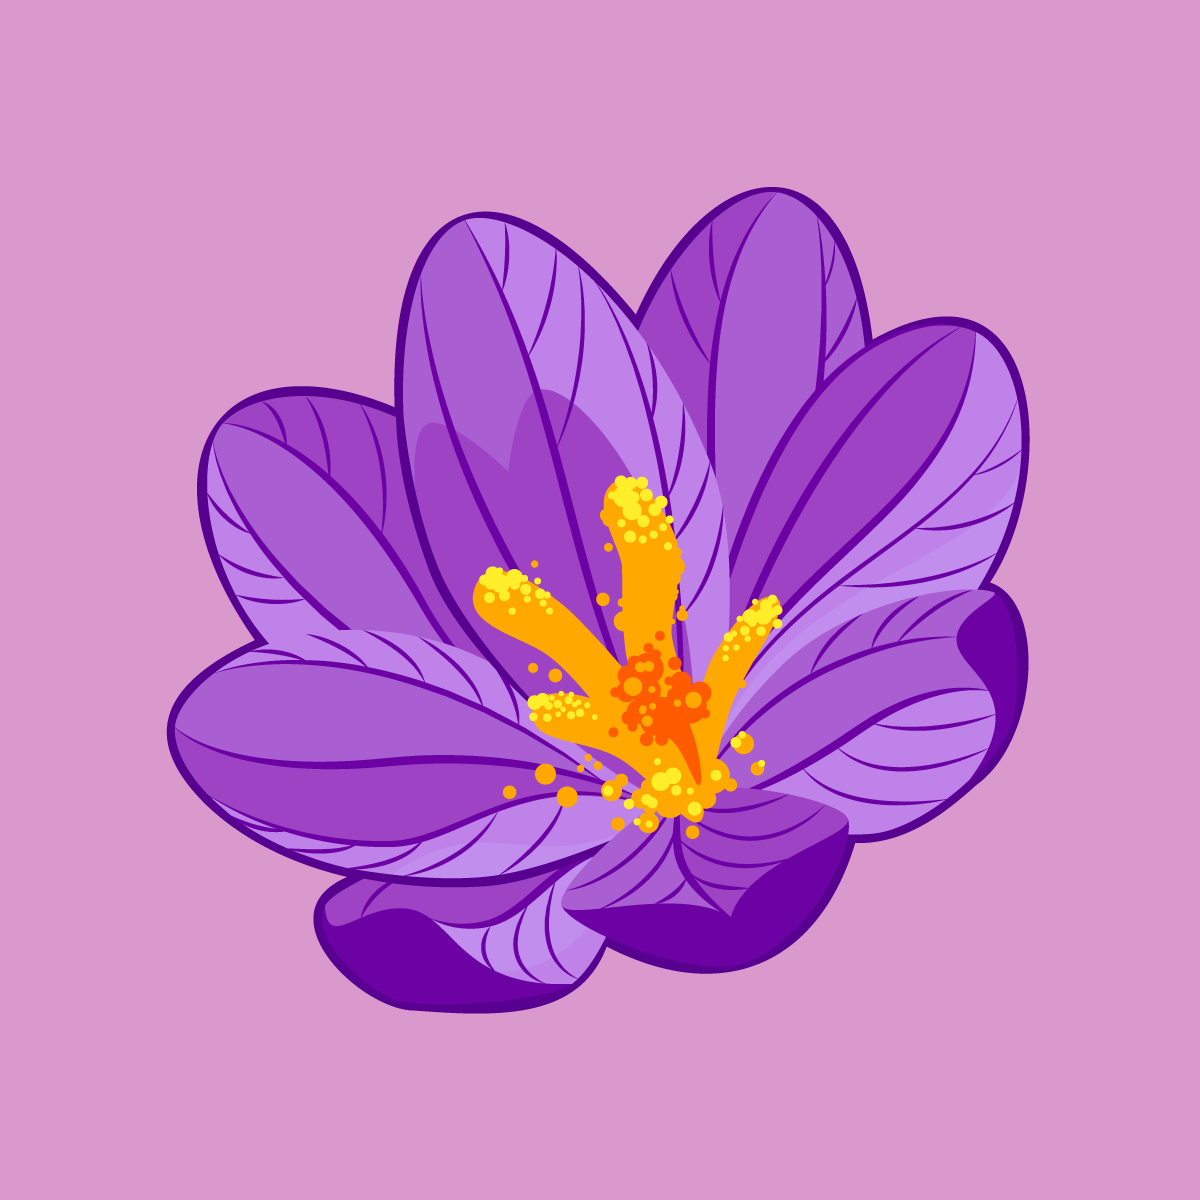 Crocus Flower Sticker 3" x 3"